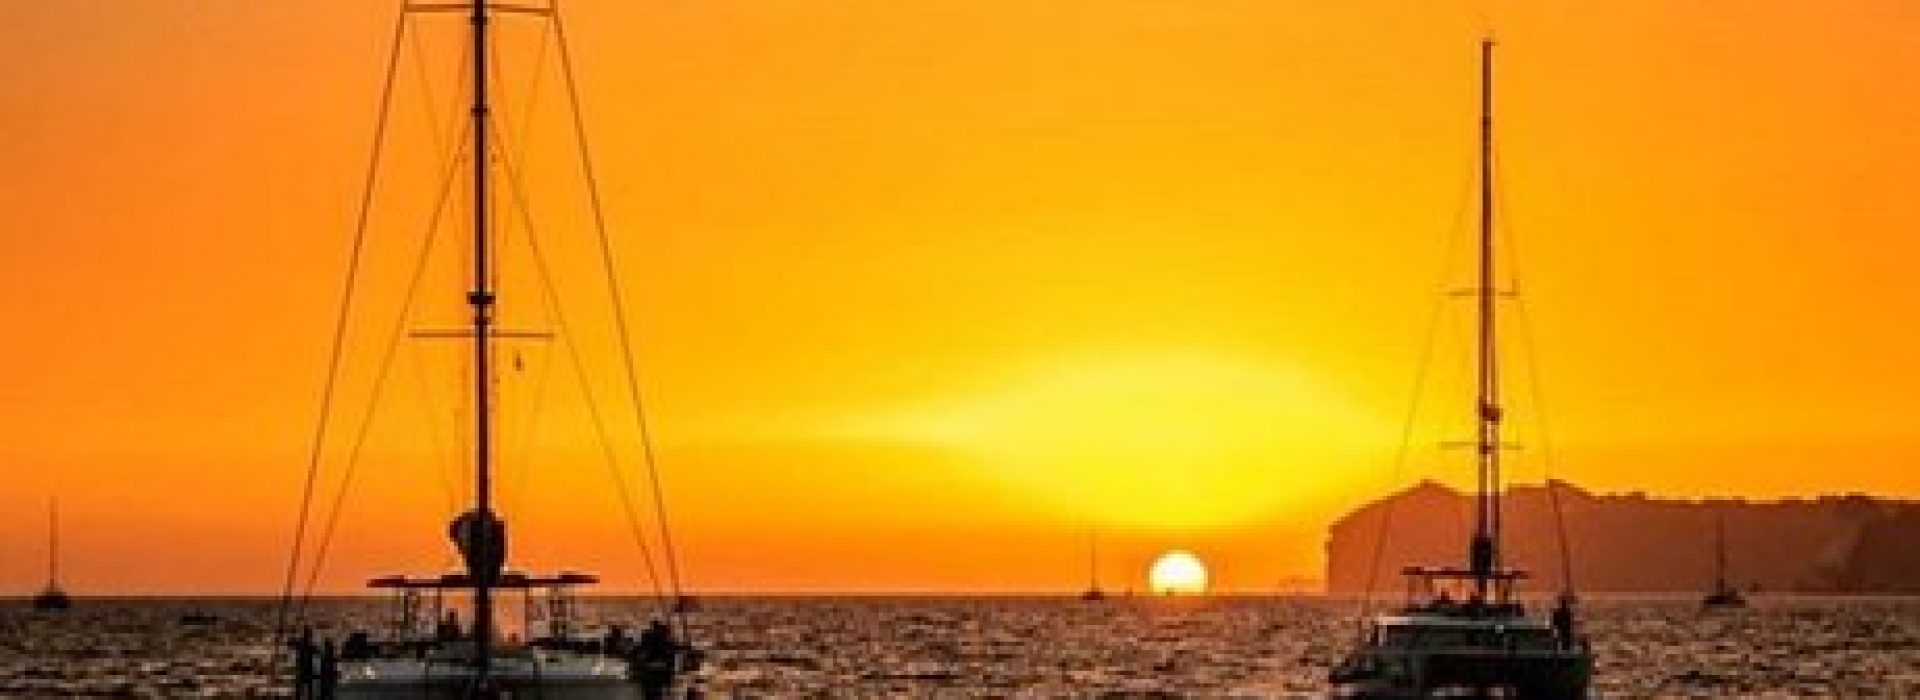 magic-sunset-sailing